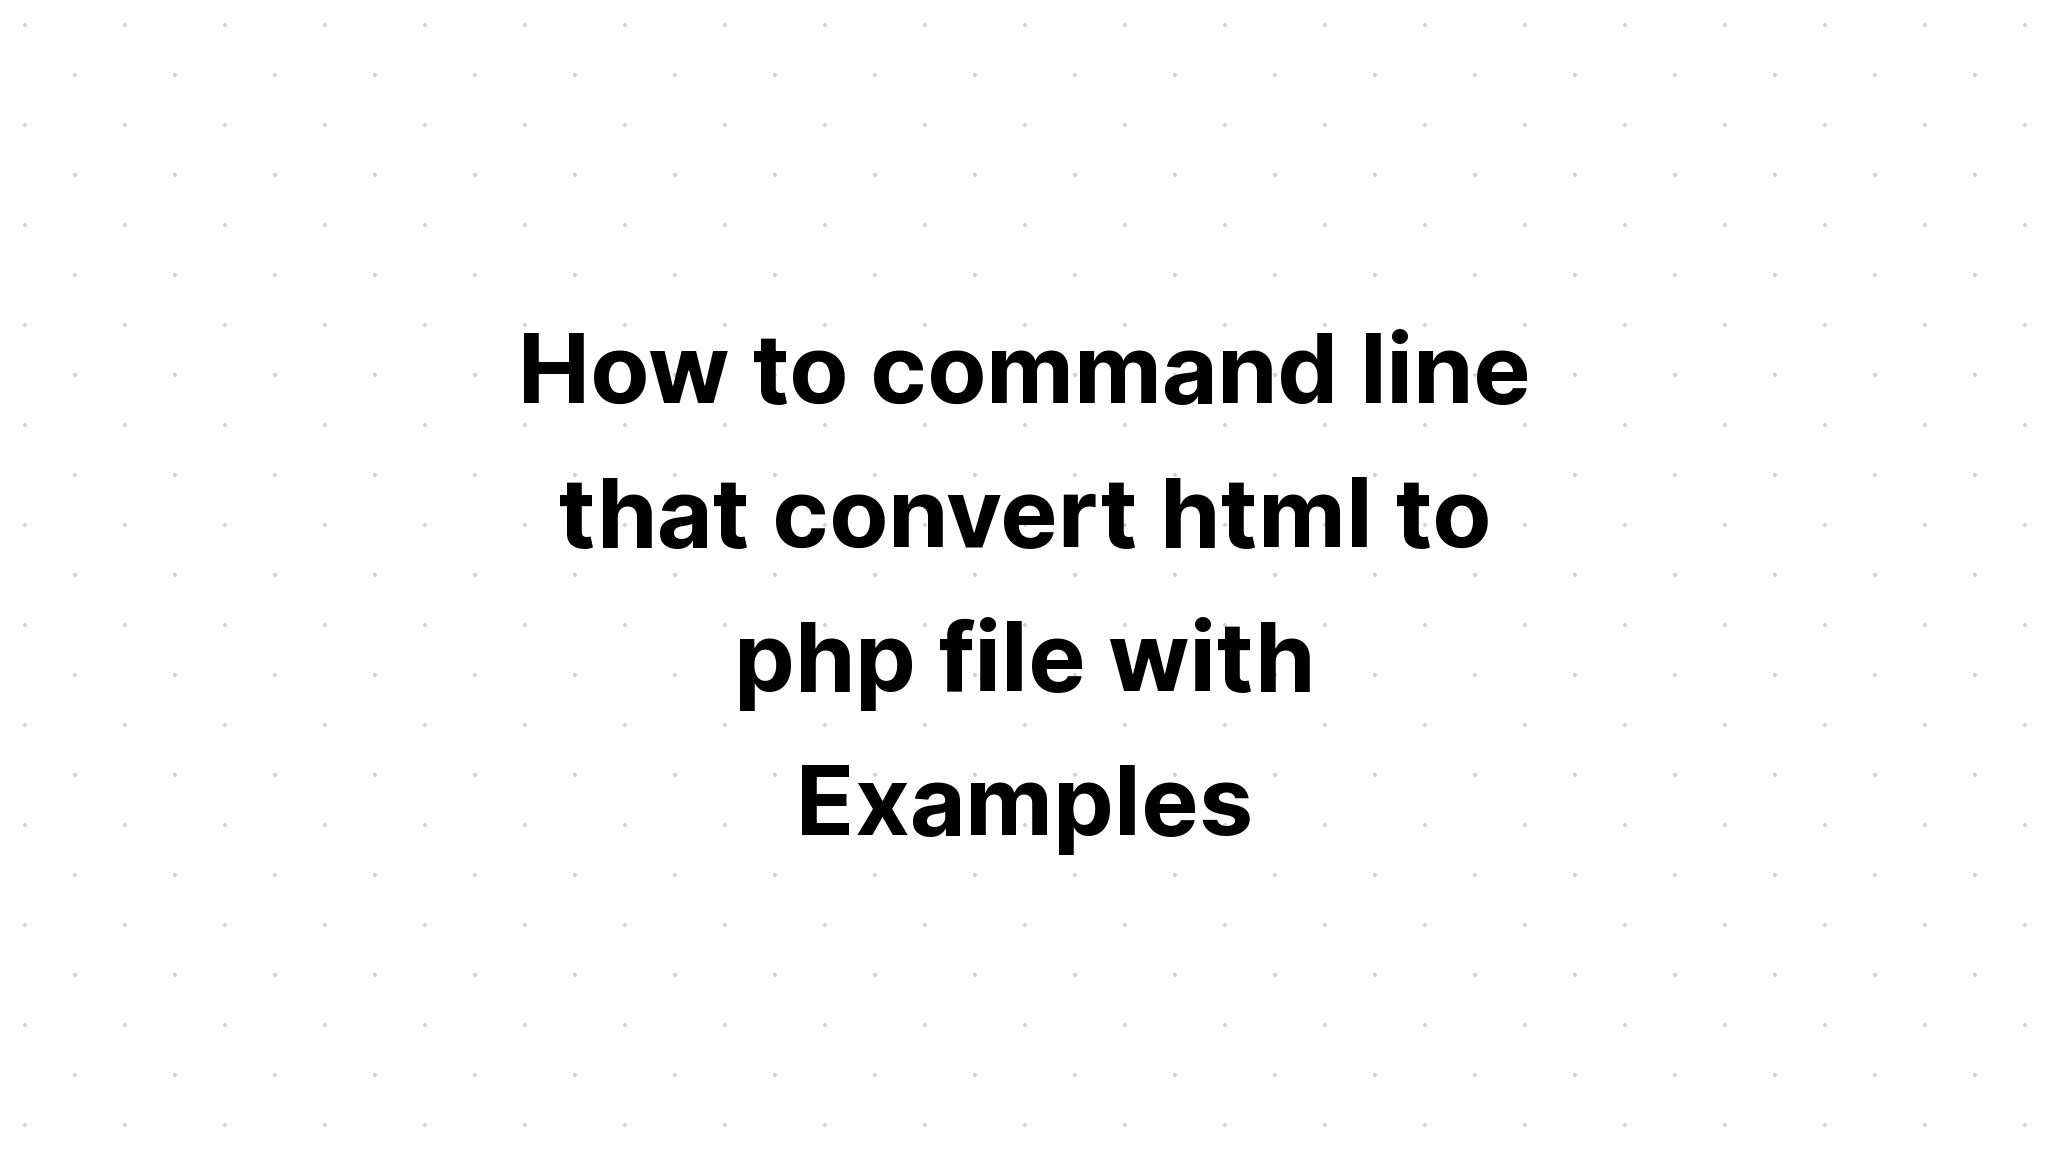 Bagaimana baris perintah yang mengubah file html ke php dengan Contoh